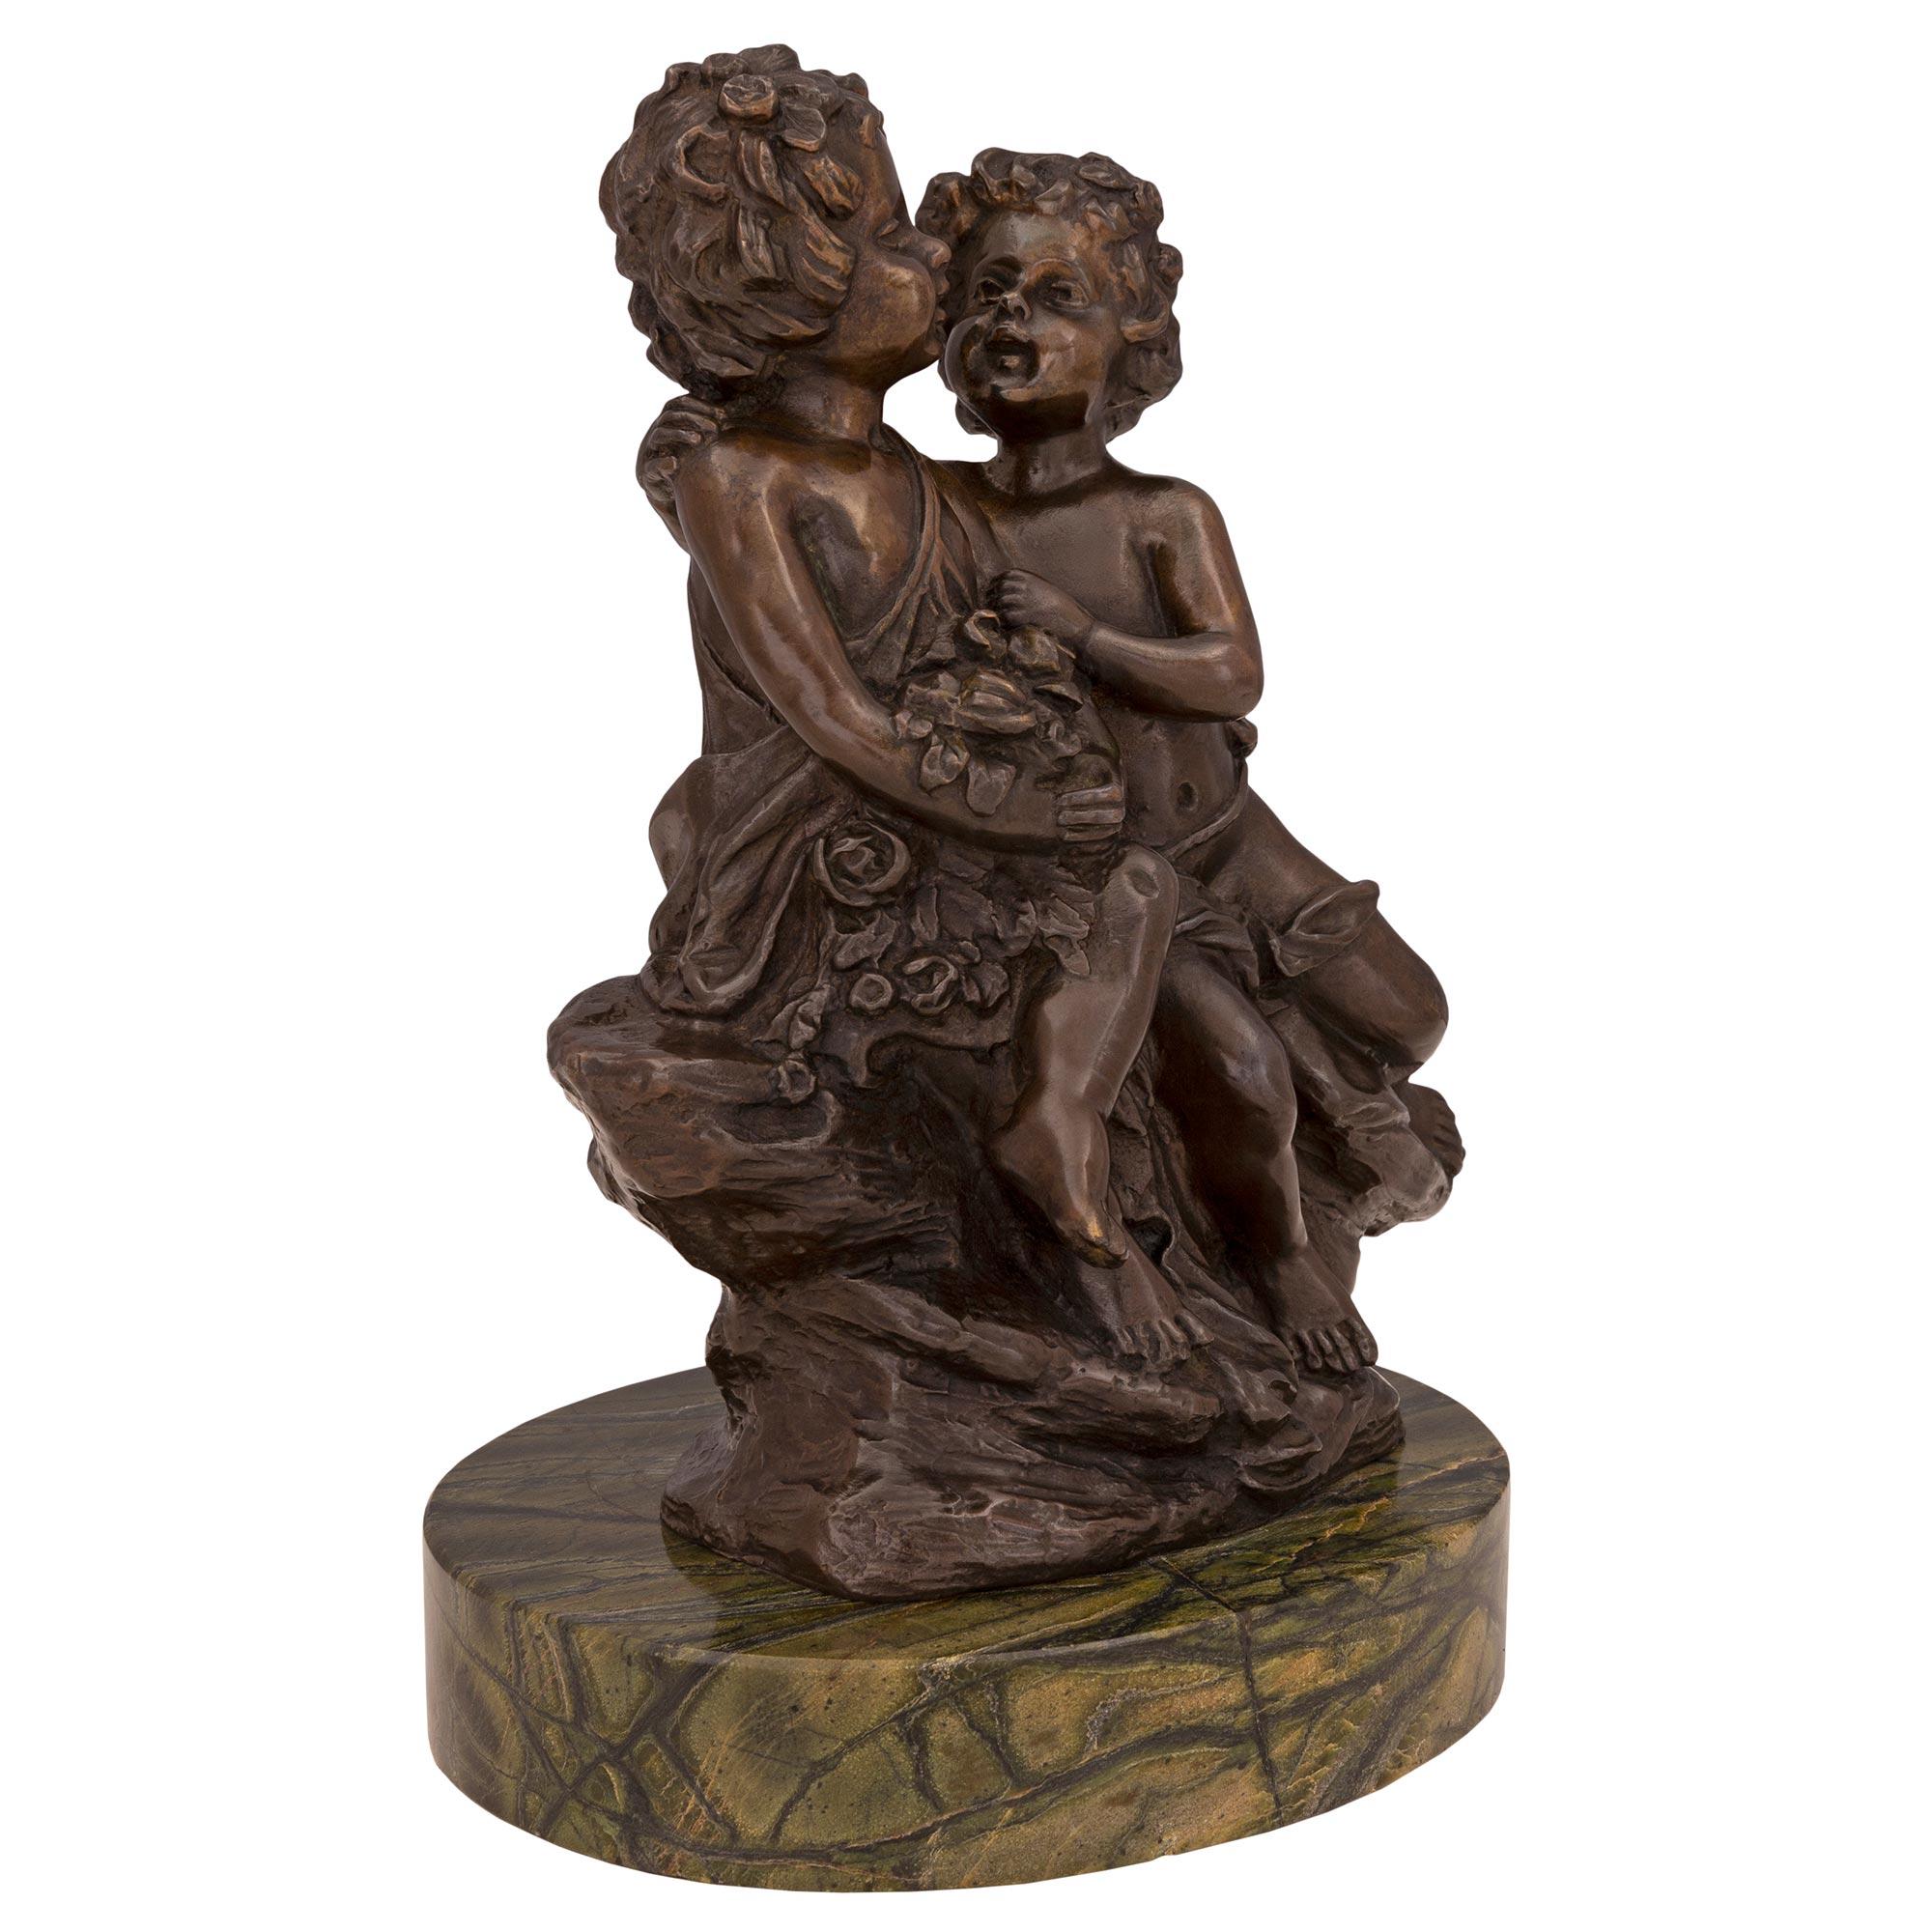 Charmante statue en bronze patiné et marbre de style Louis XVI du XIXe siècle, signée Auguste Moreau. La statue est surélevée par une fine base circulaire en marbre. Le bronze ci-dessus représente une scène charmante d'un jeune garçon faisant la